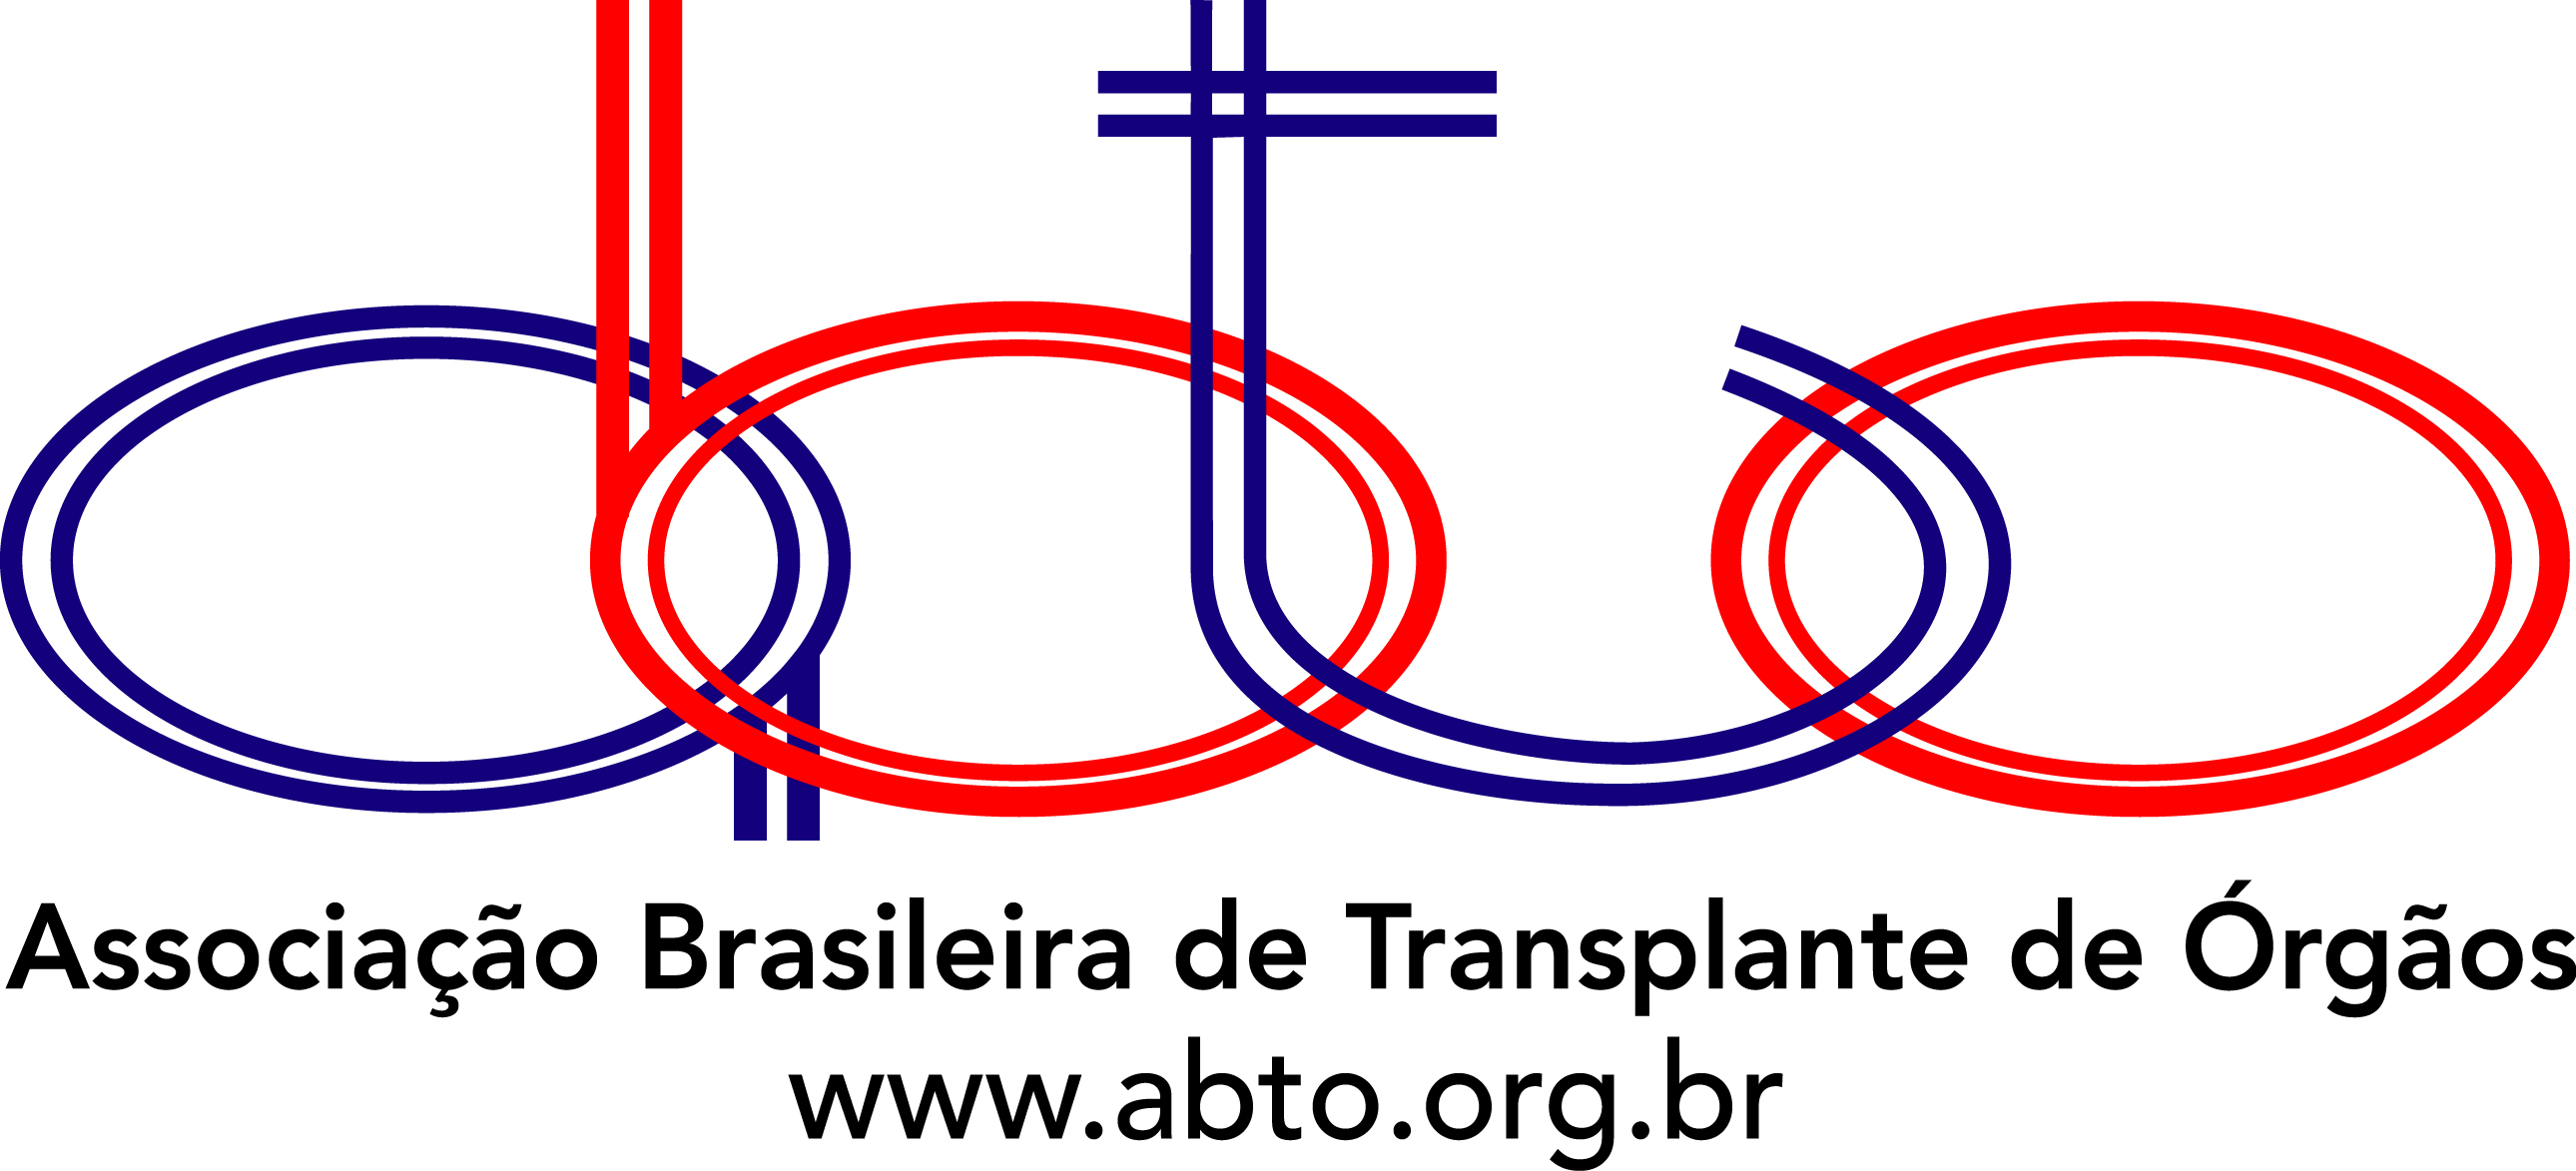 Associação Brasileira de Transplante de Órgão